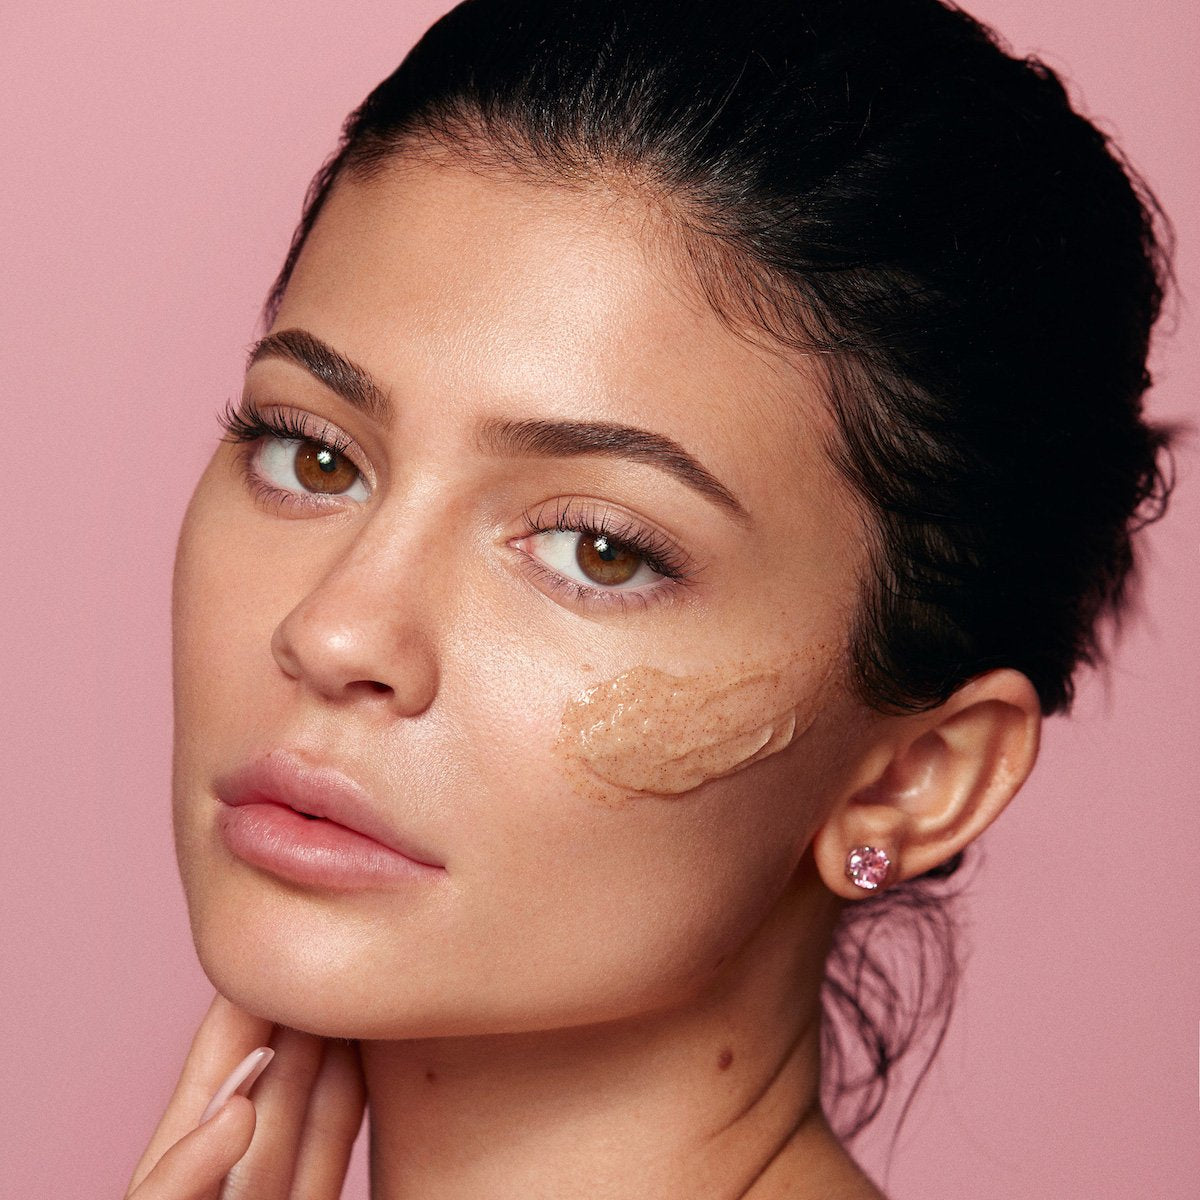 Kylie using Kylie Skin Walnut Face Scrub by Kylie Jenner